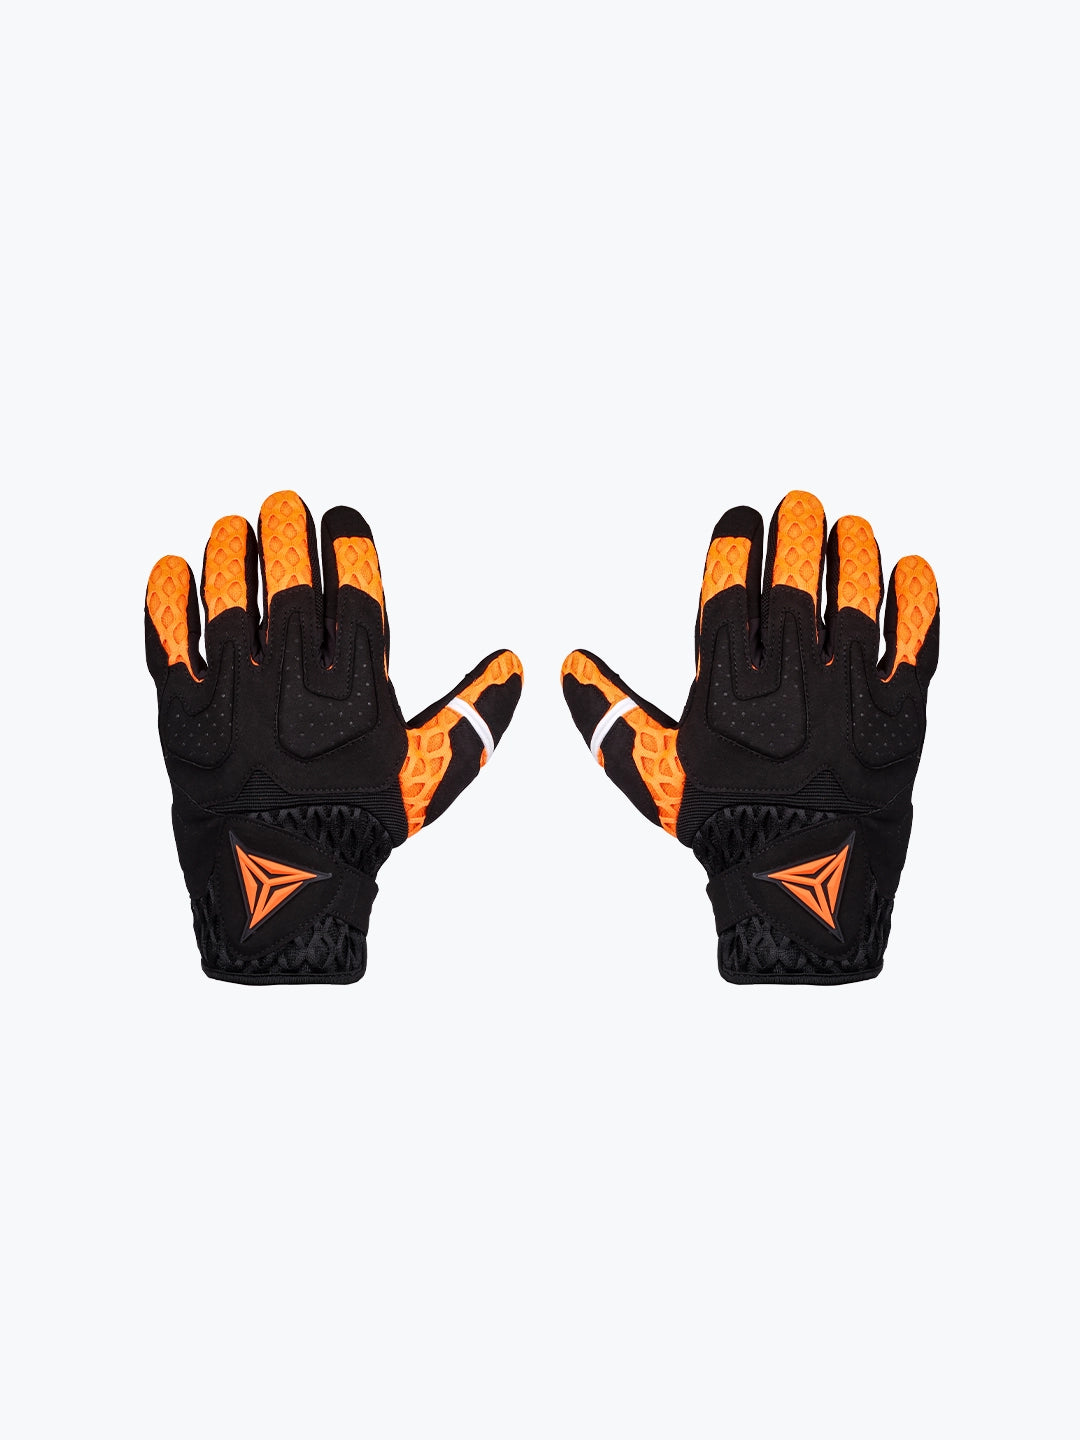 Motowolf Gloves Orange 0339